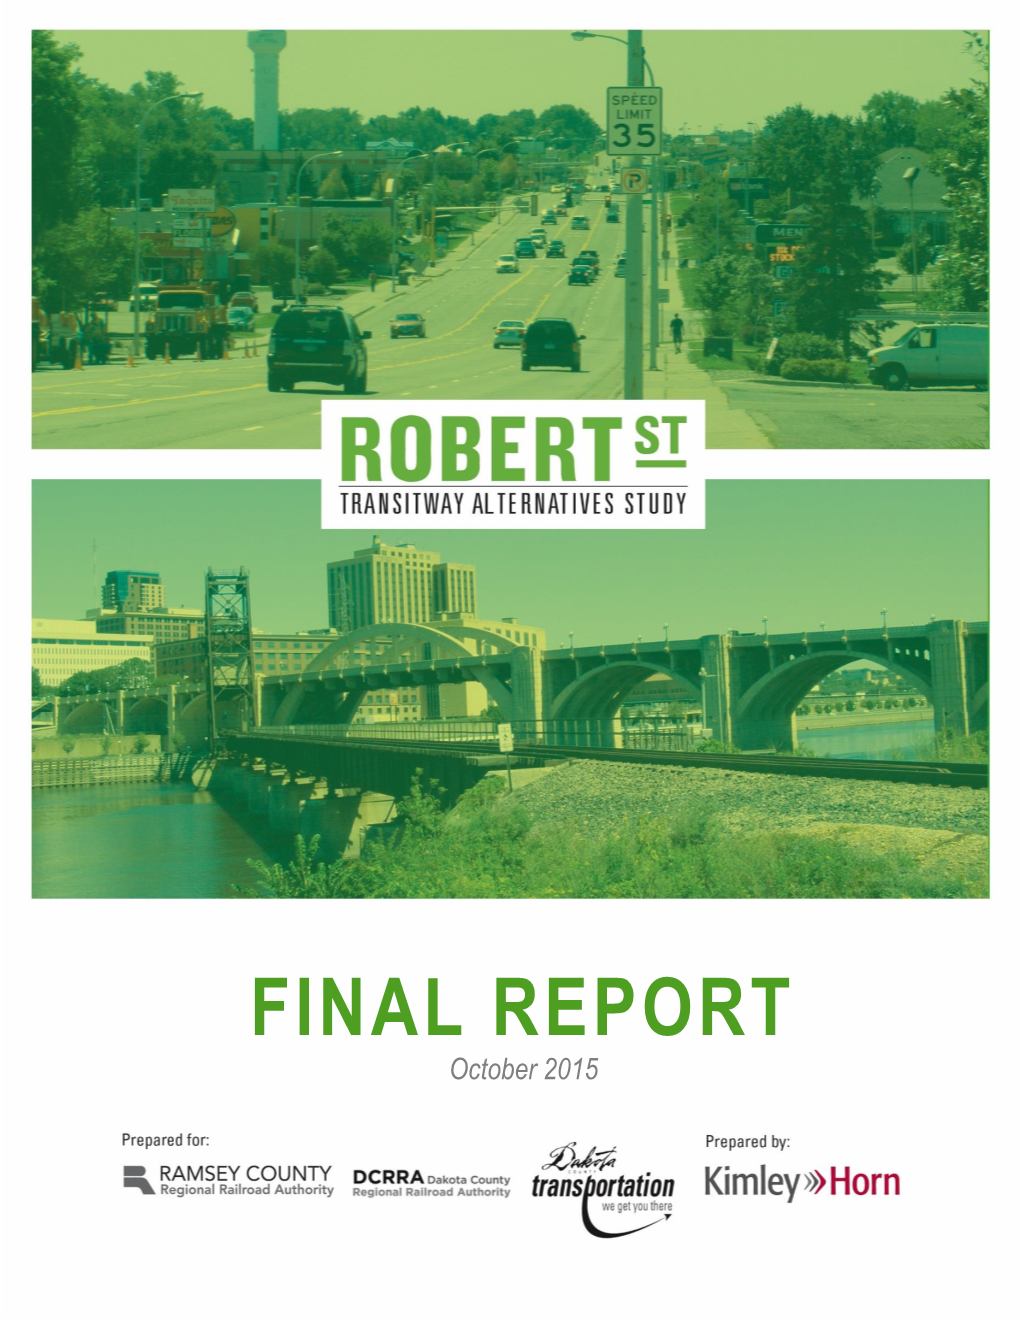 Robert Street Transitway Alternatives Study I October 2015 Final Report